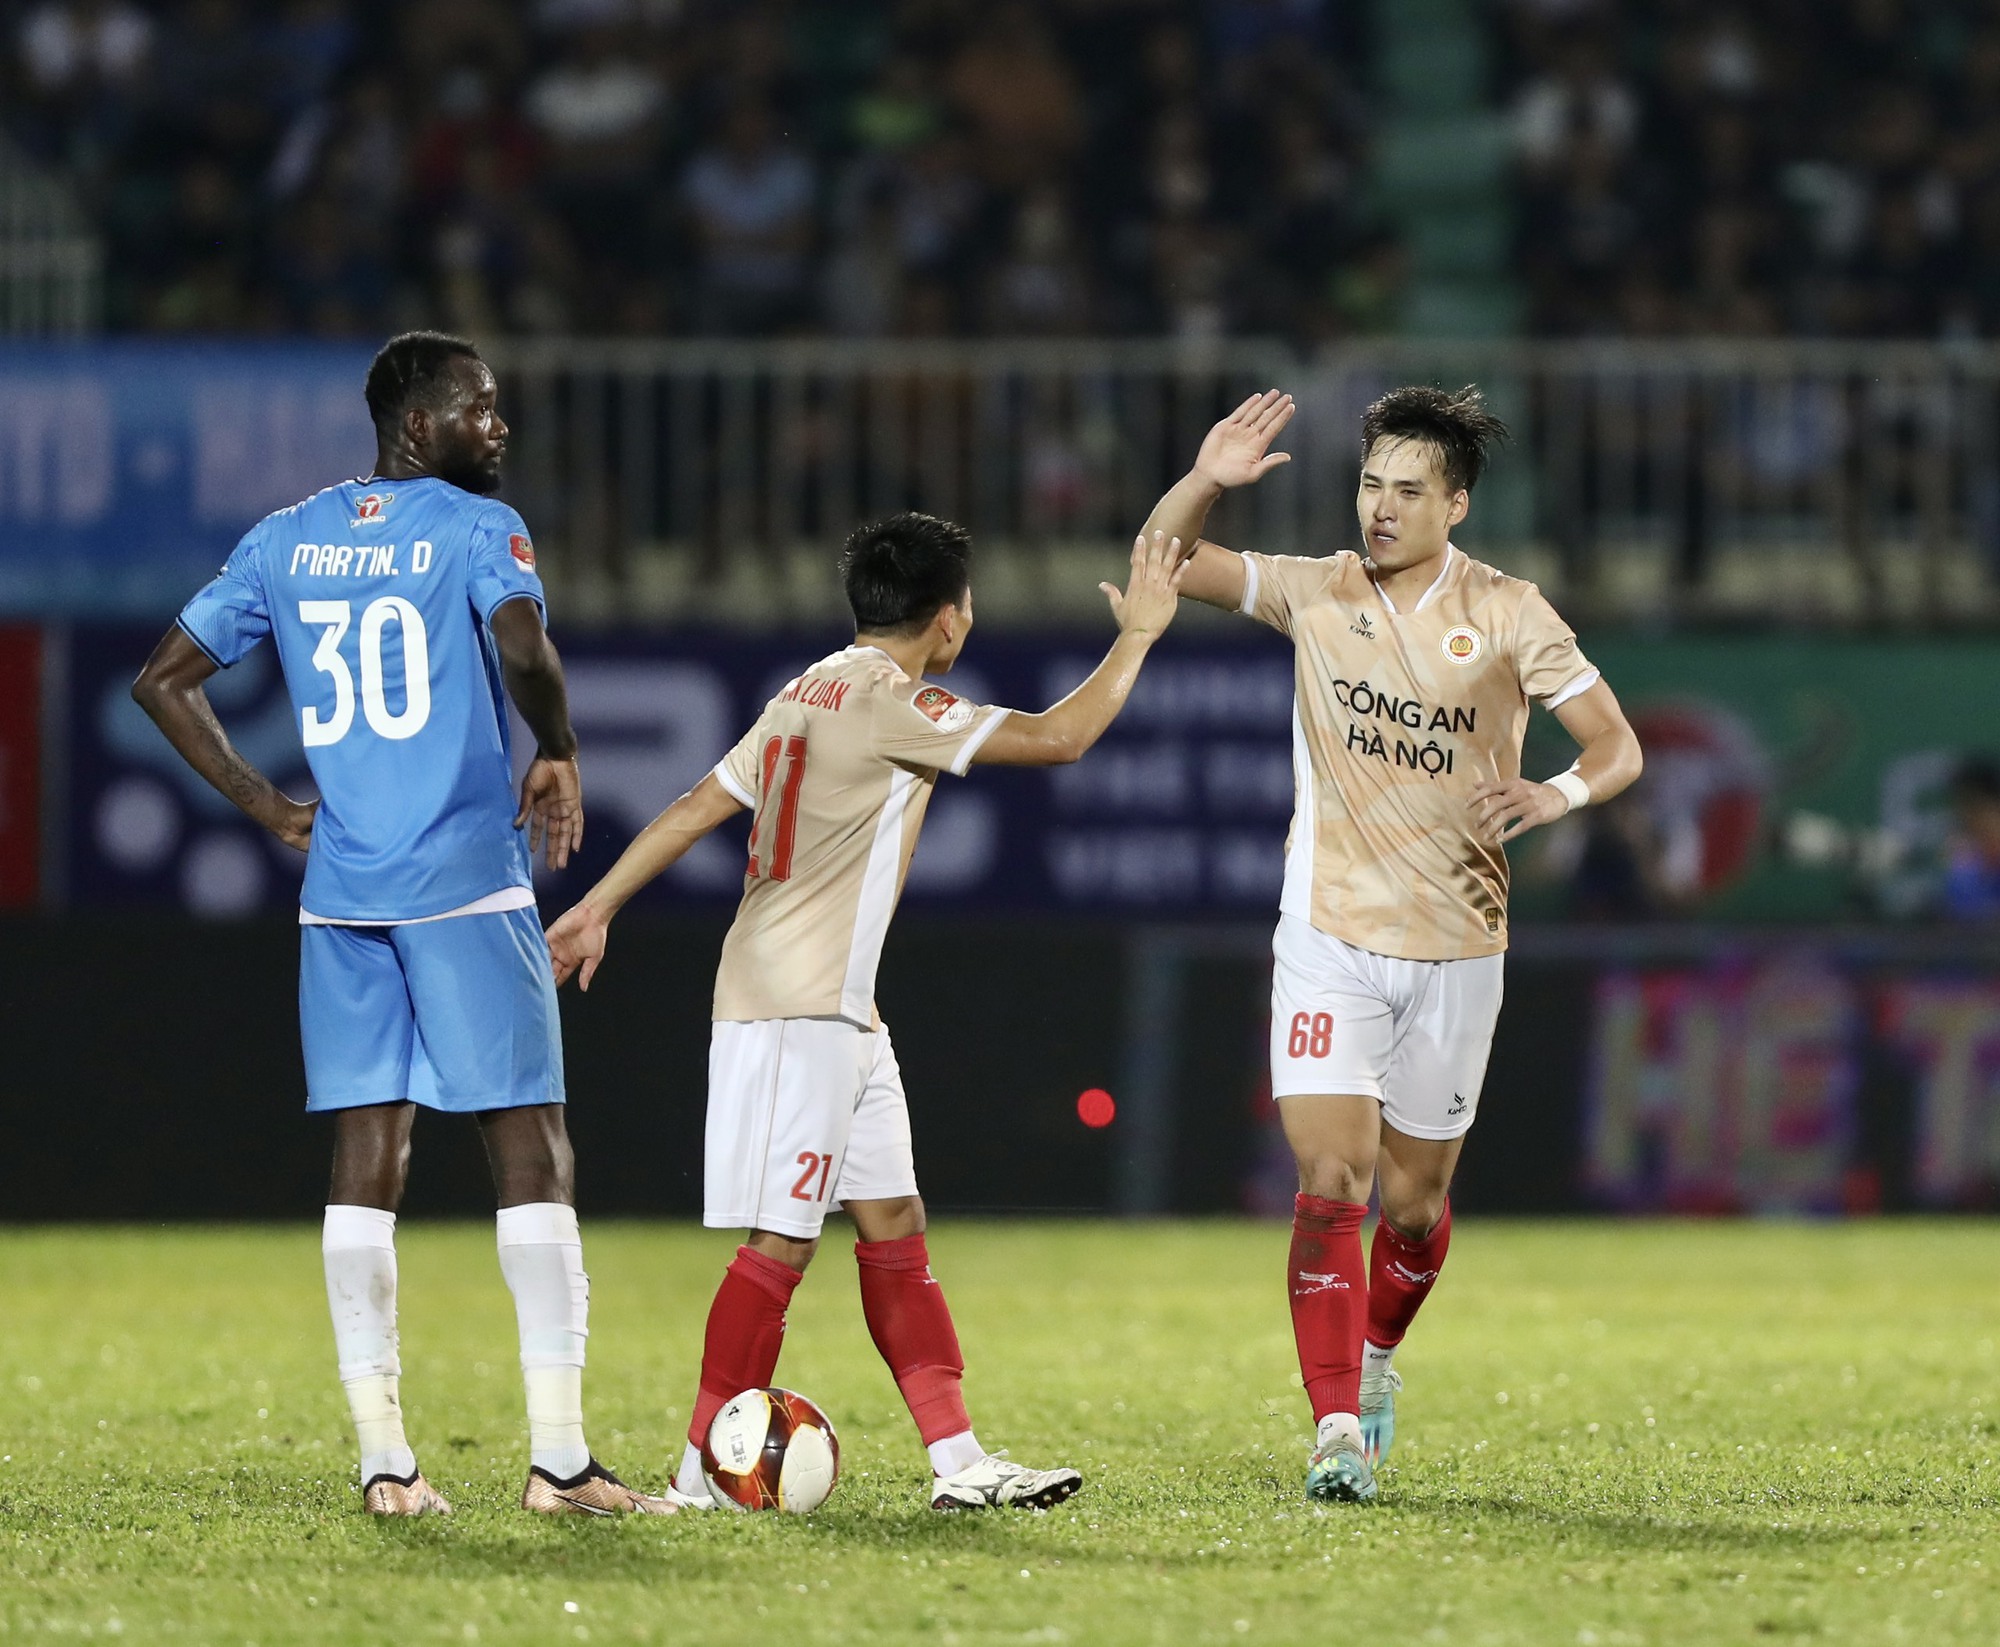 Việt Anh có bàn thắng đầu tiên cho đội bóng mới CAHN